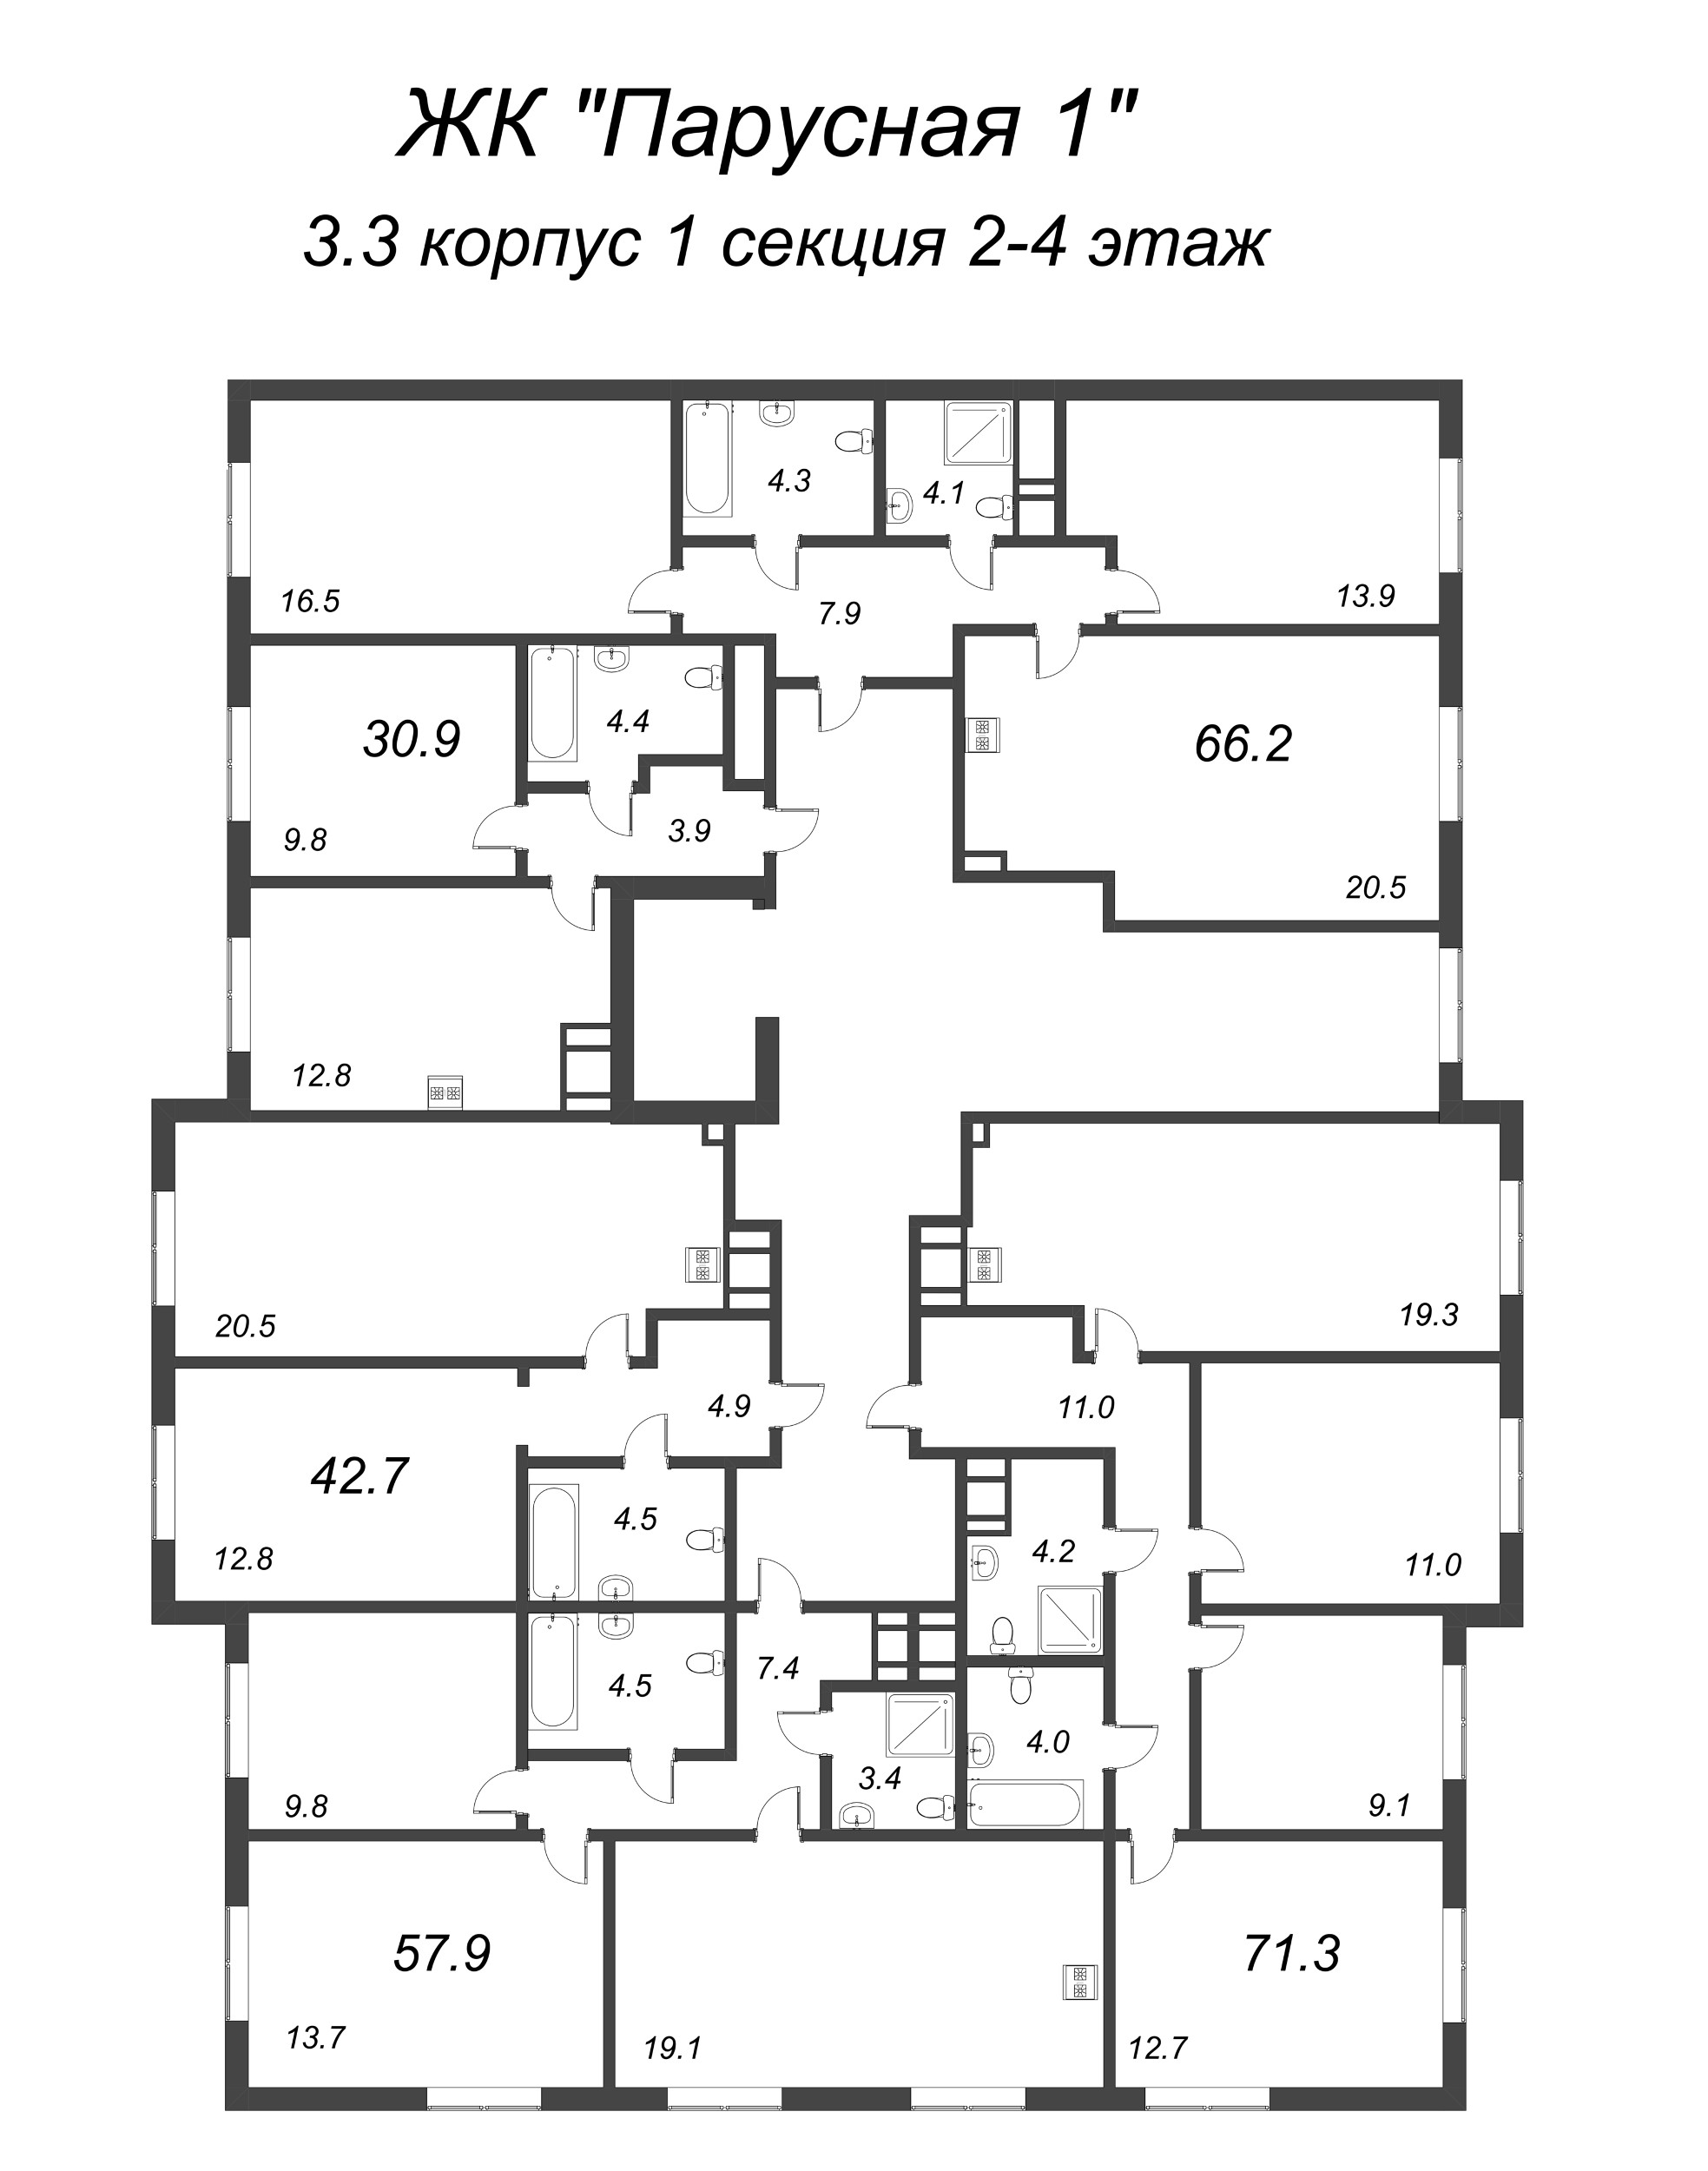 4-комнатная (Евро) квартира, 71.3 м² в ЖК "Парусная 1" - планировка этажа